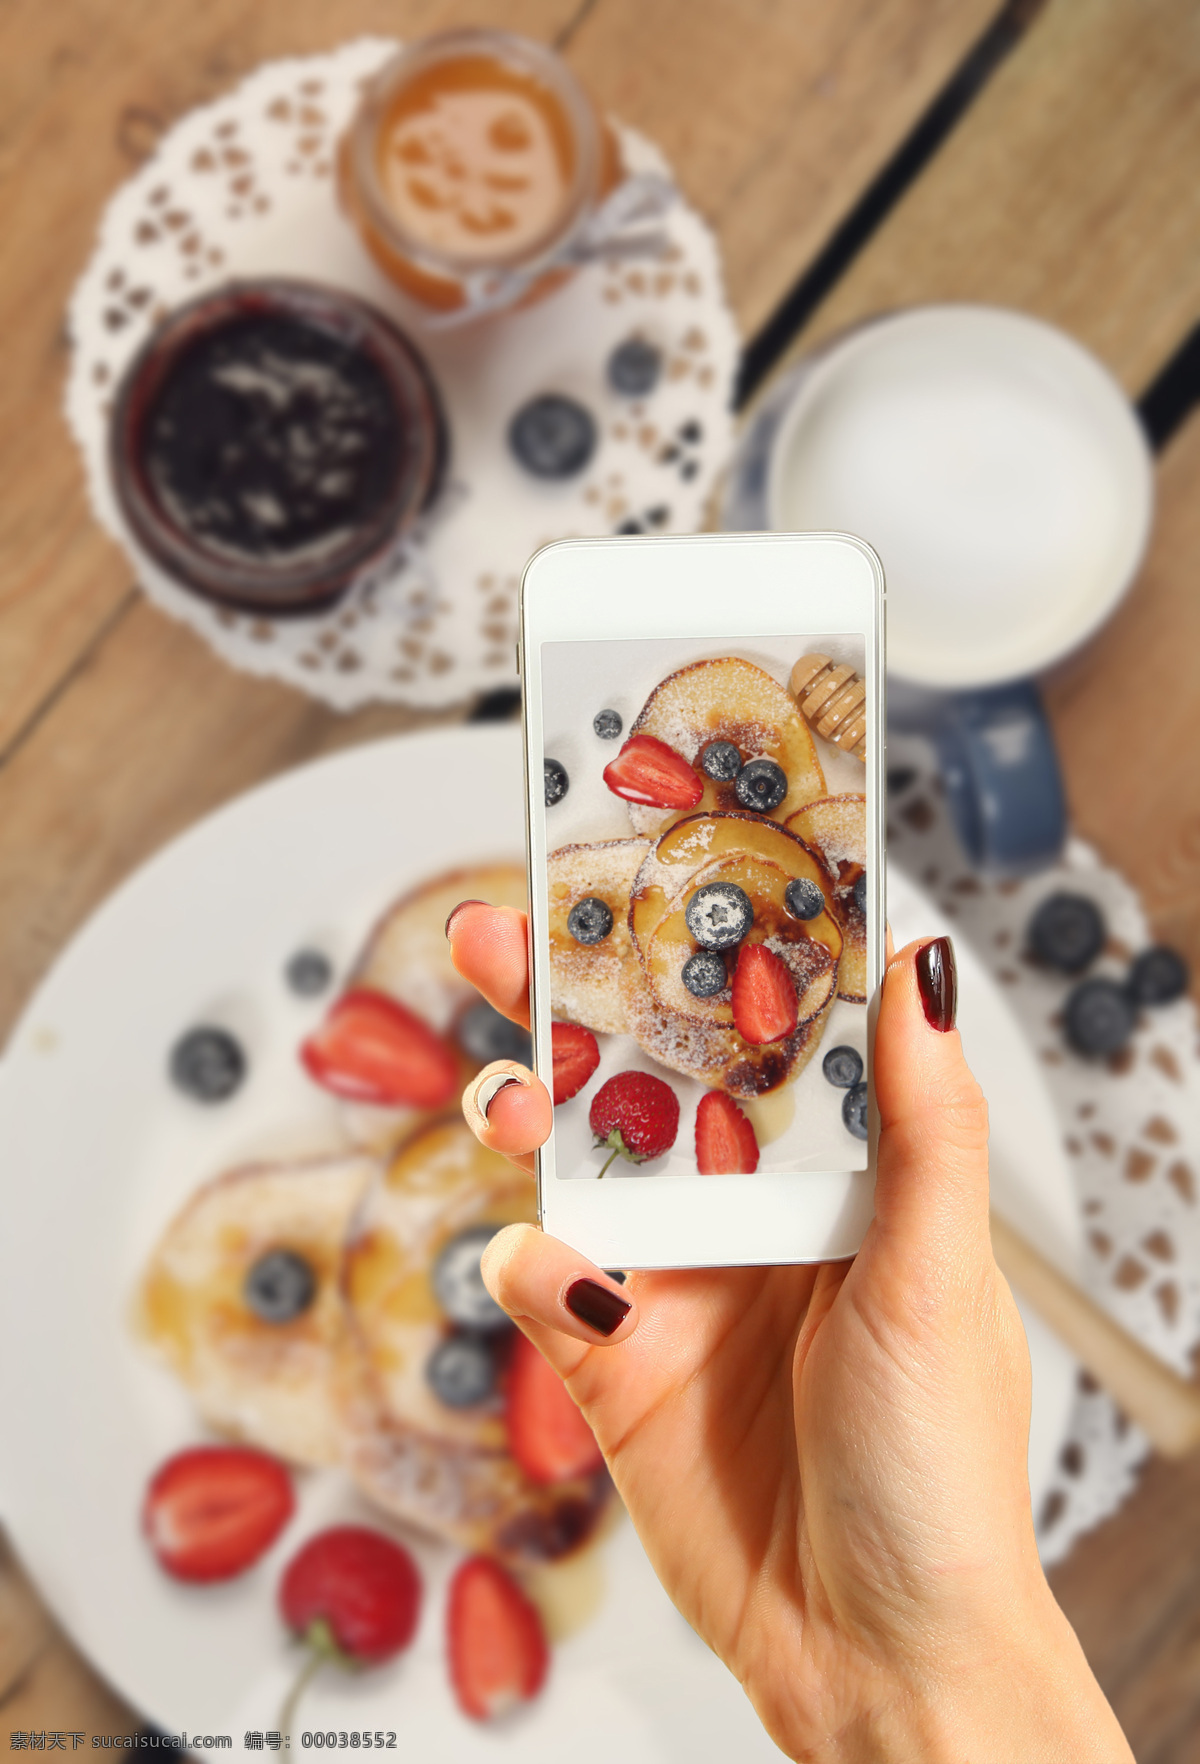 手机 拍照 美食 草莓 蓝莓 美食摄影 手机拍照 照相 手势 苹果手机 iphone 智能手机 通讯工具 手机图片 现代科技